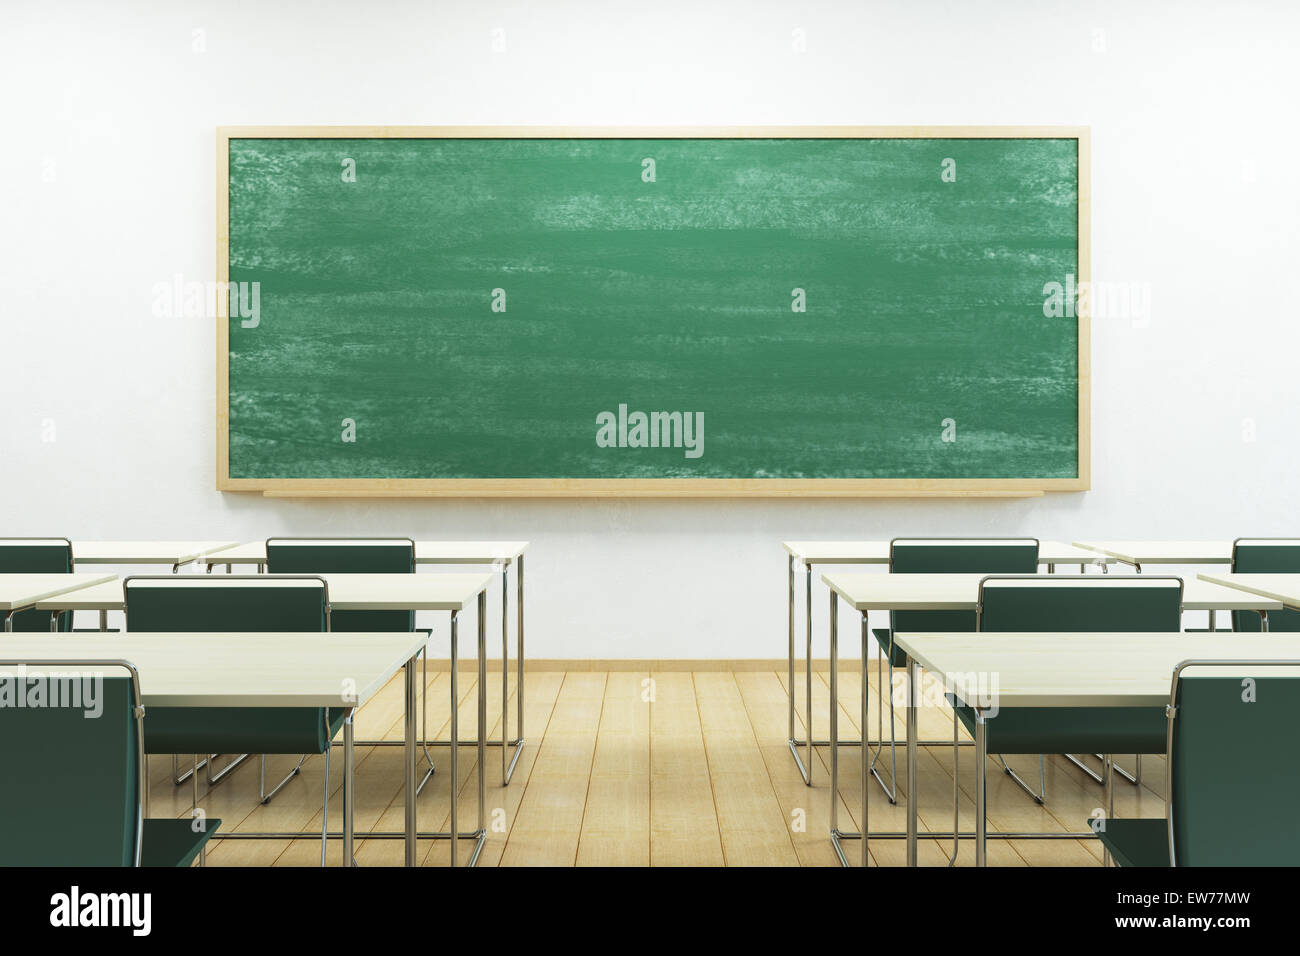 Classe de l'école vide avec tableau noir Photo Stock - Alamy